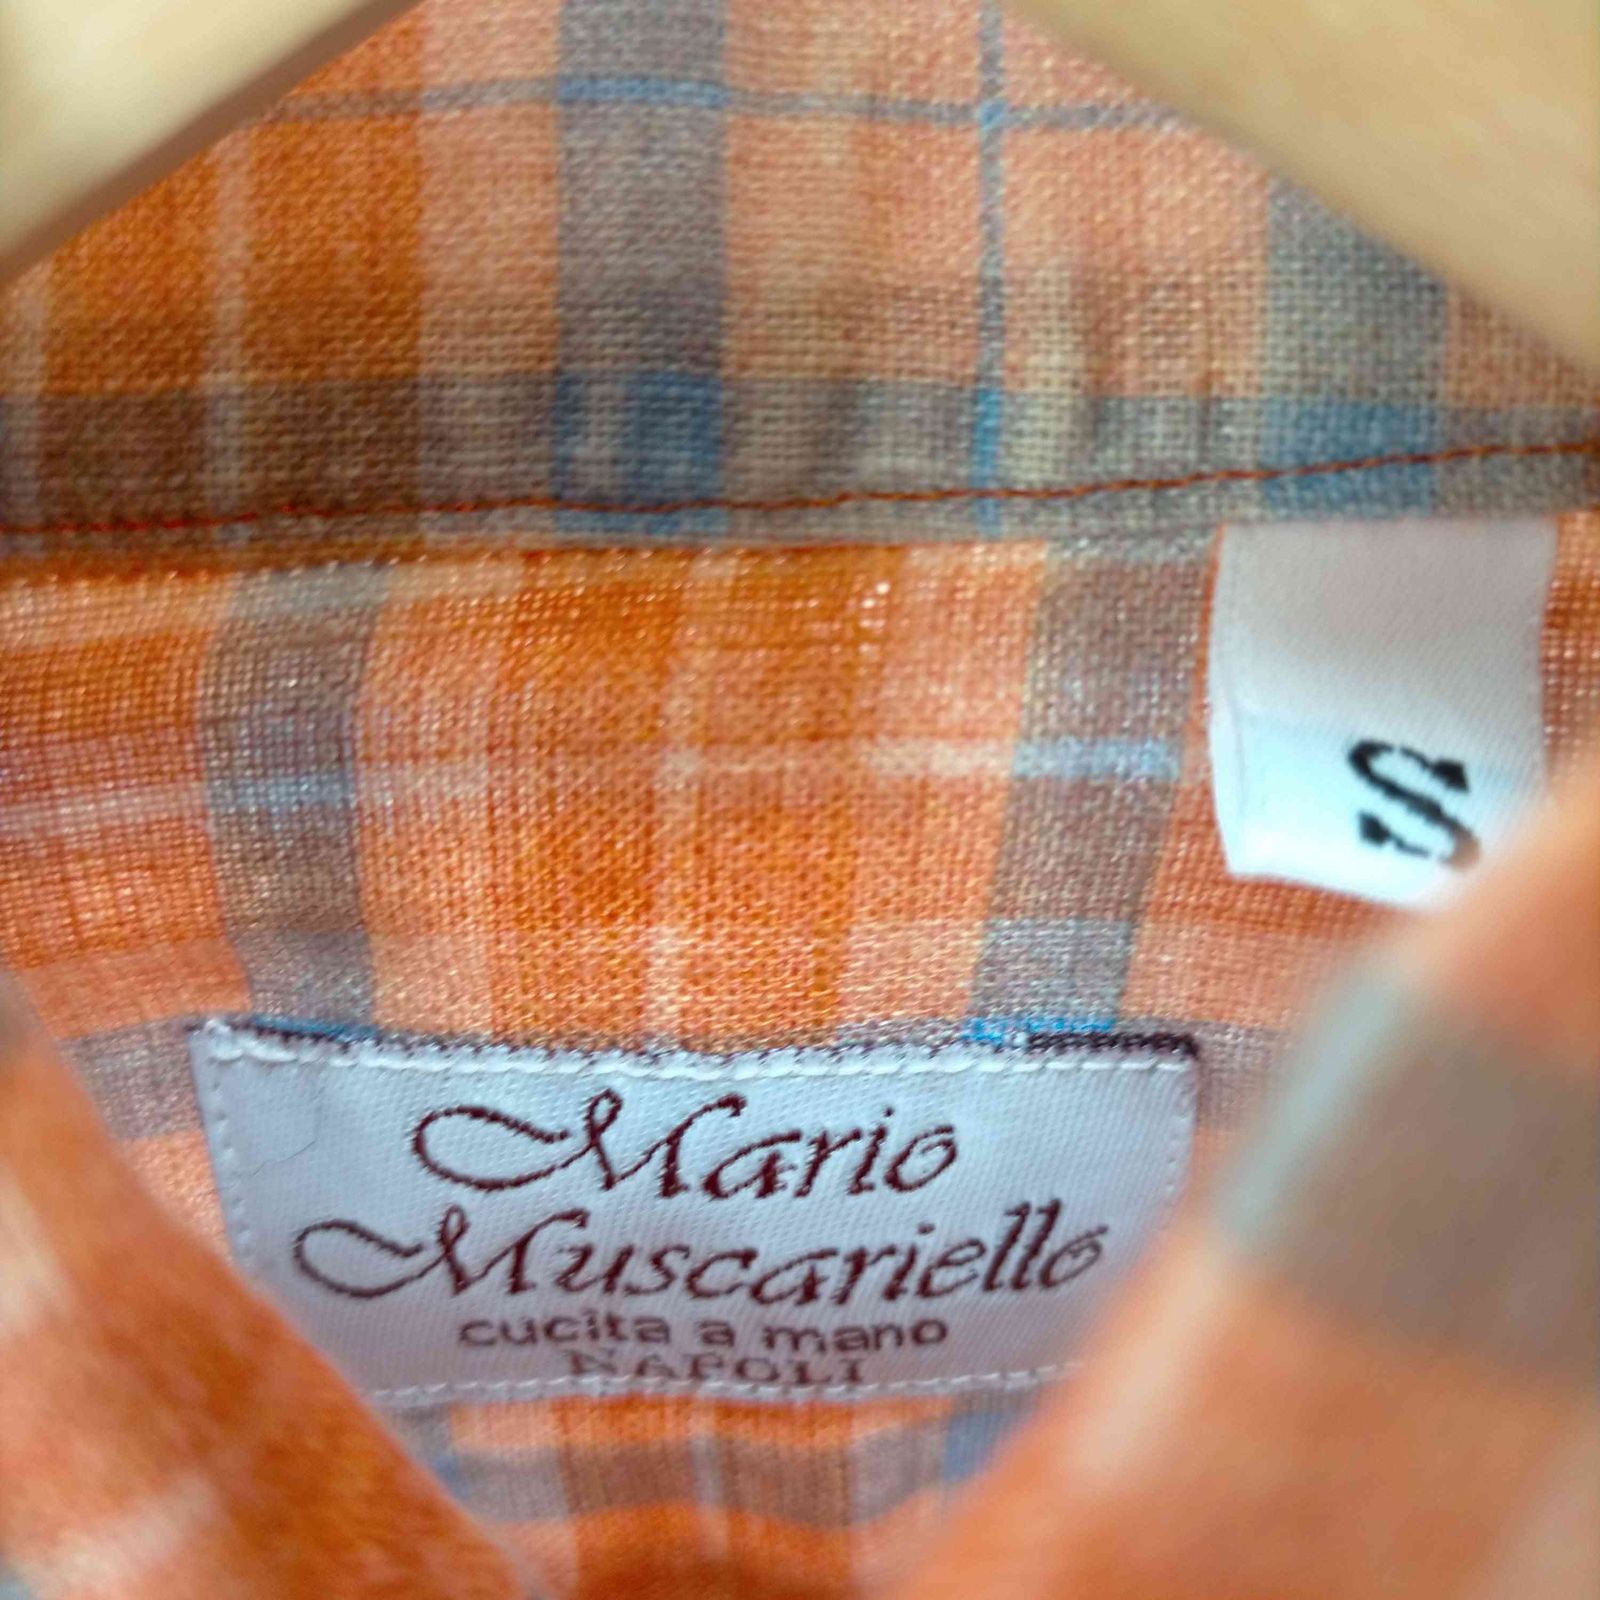 マリオムスカリエッロ mario muscariello リネンシャツ メンズ import